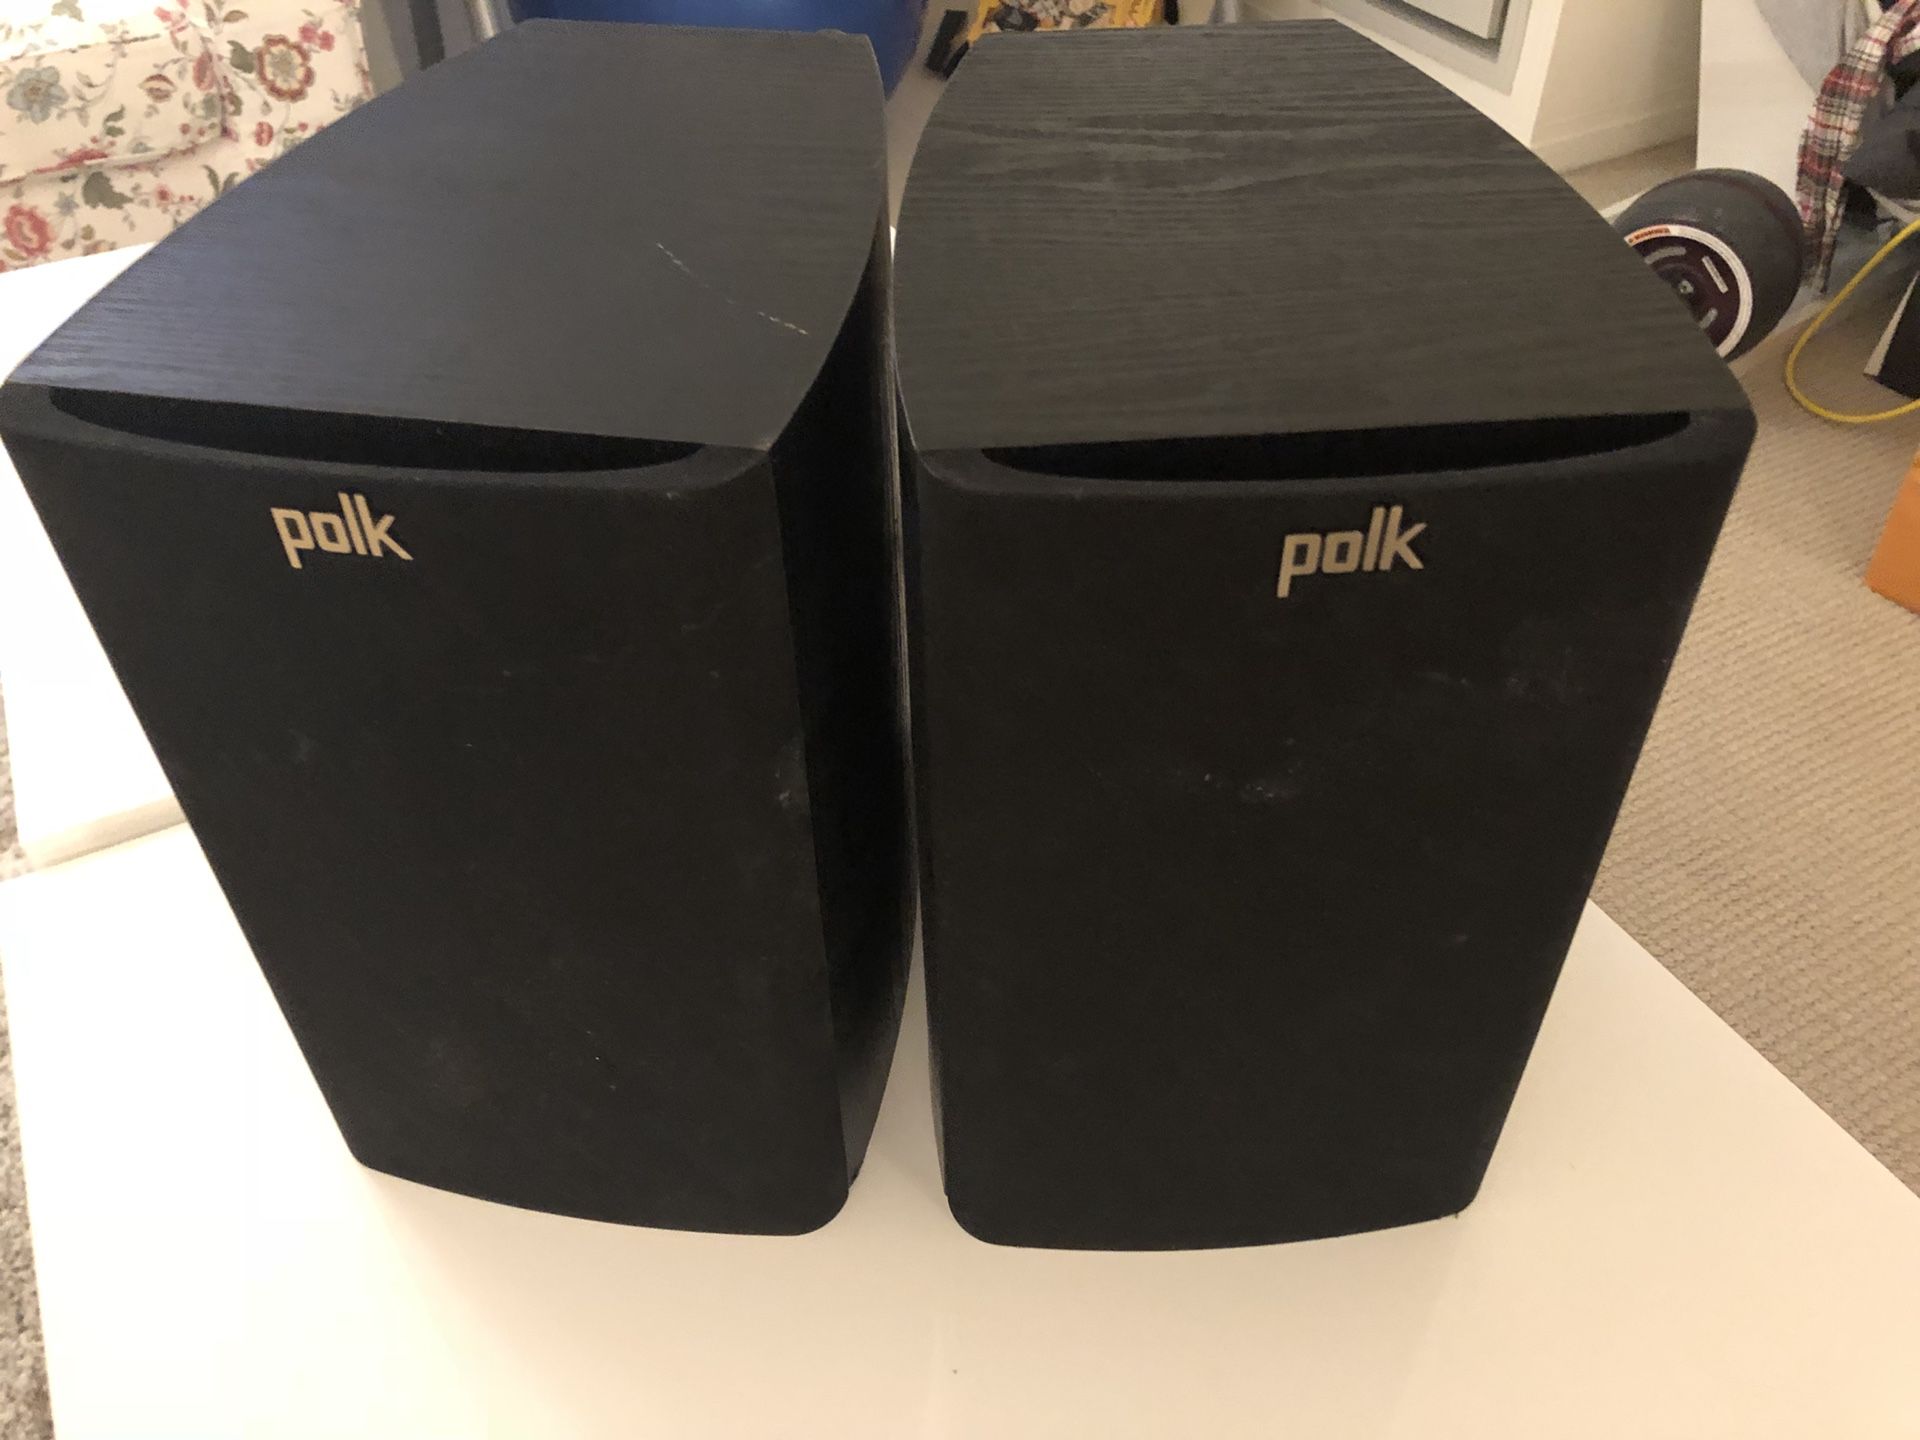 POLK speaker x2